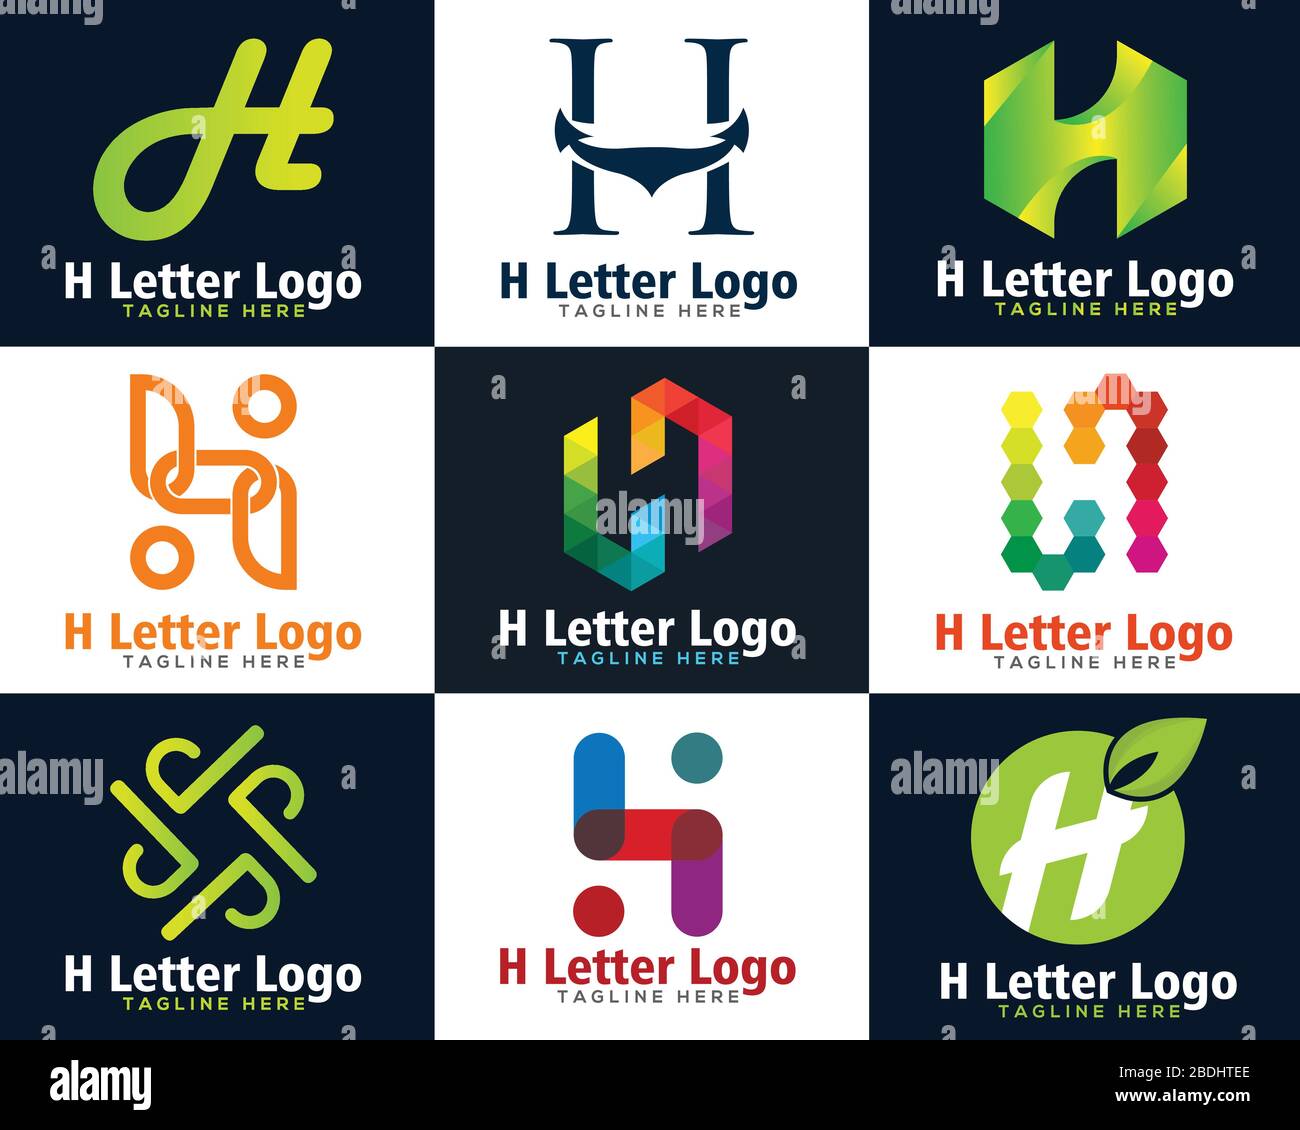 letter h logo